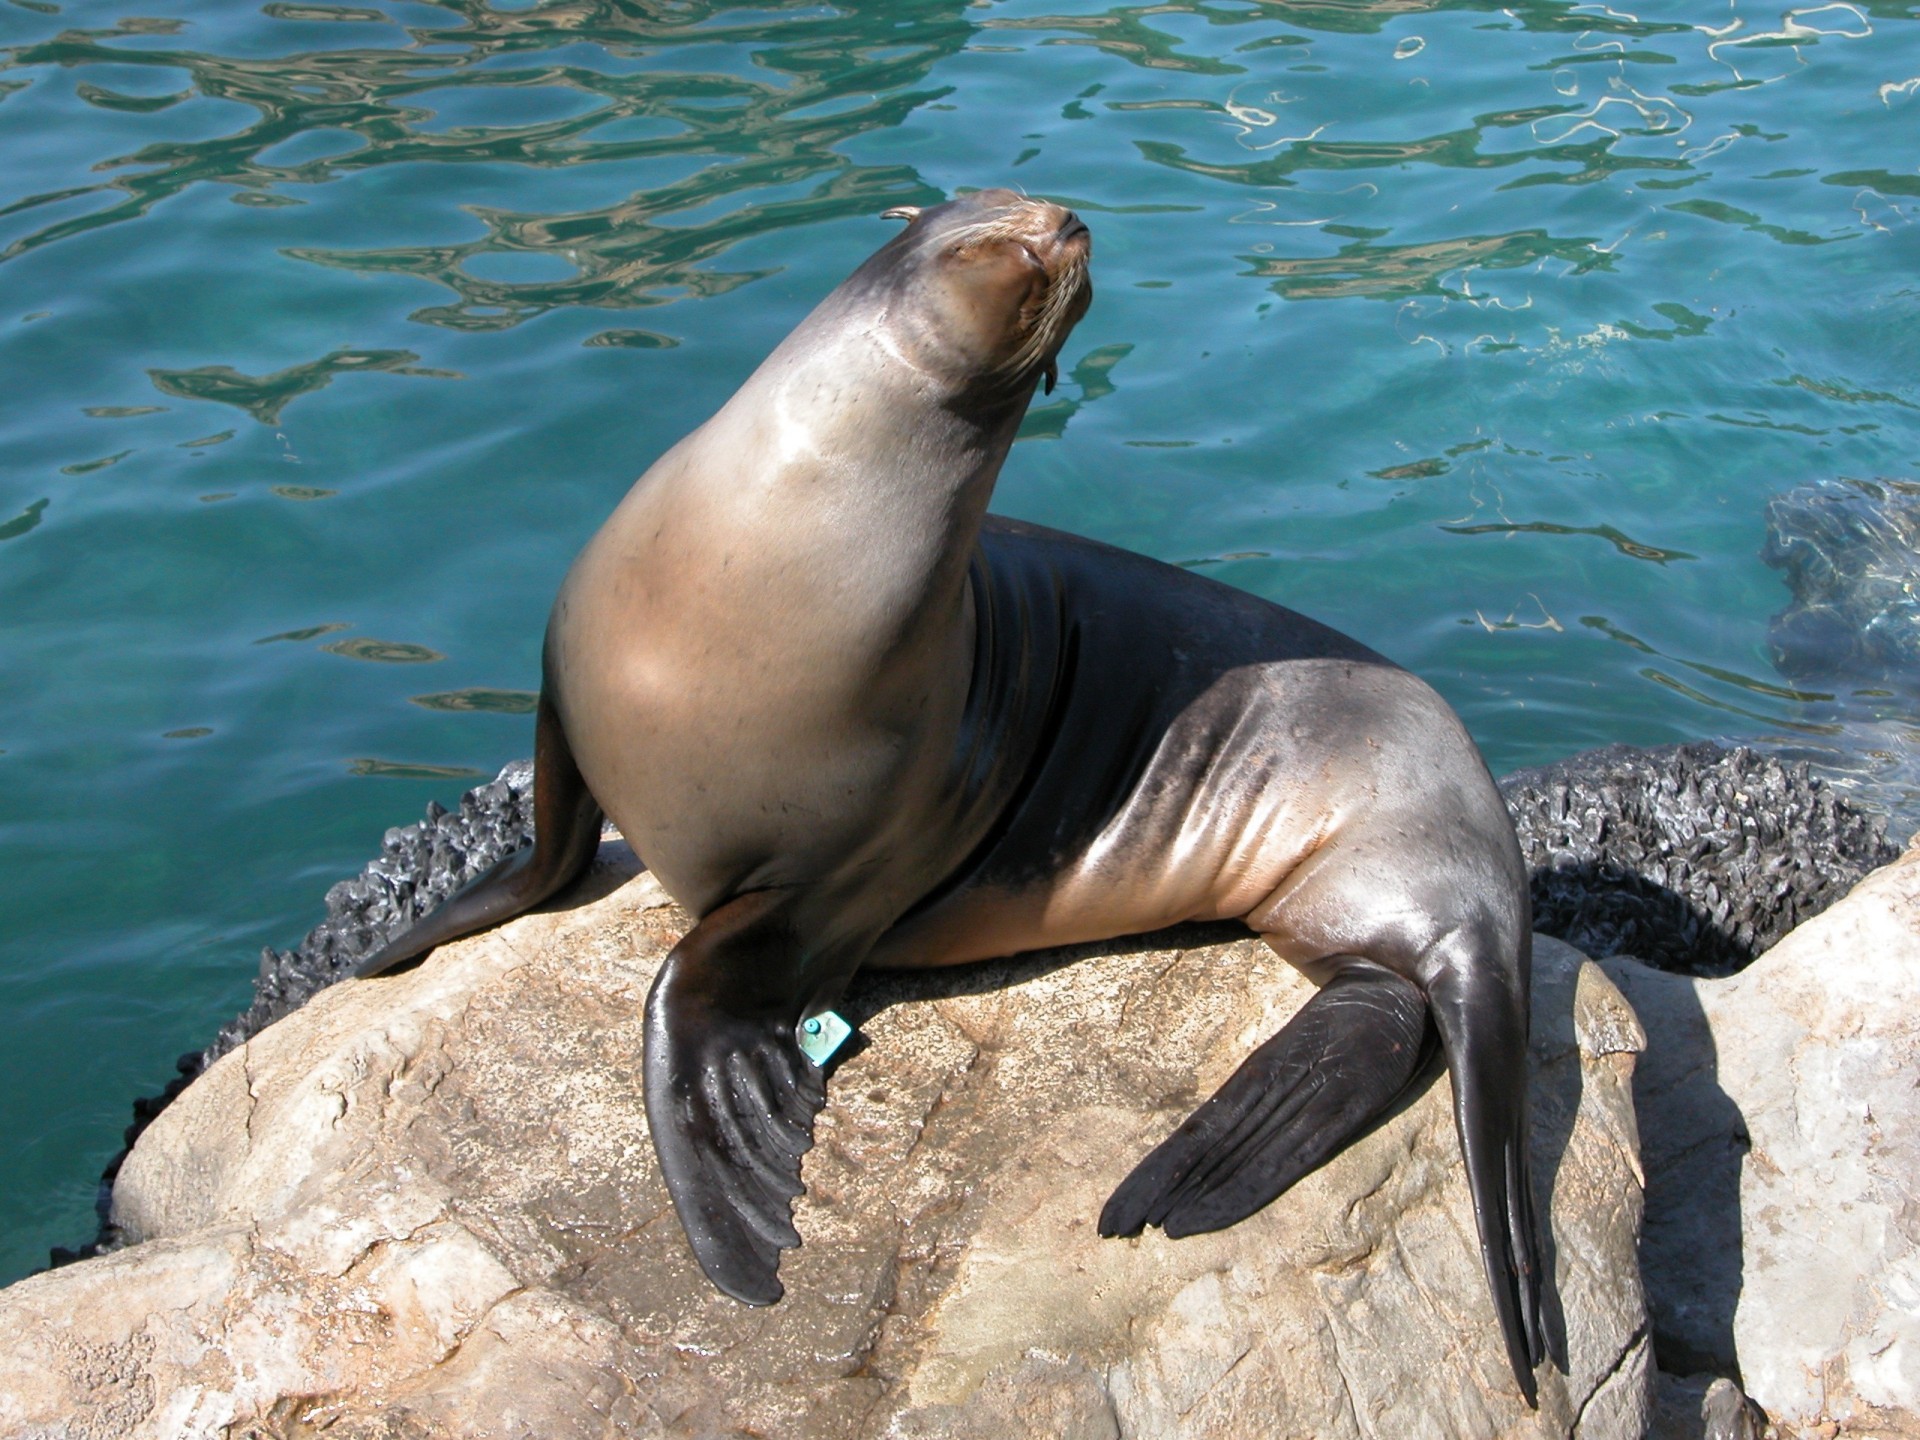 seal-at-aquarium-free-stock-photo-public-domain-pictures